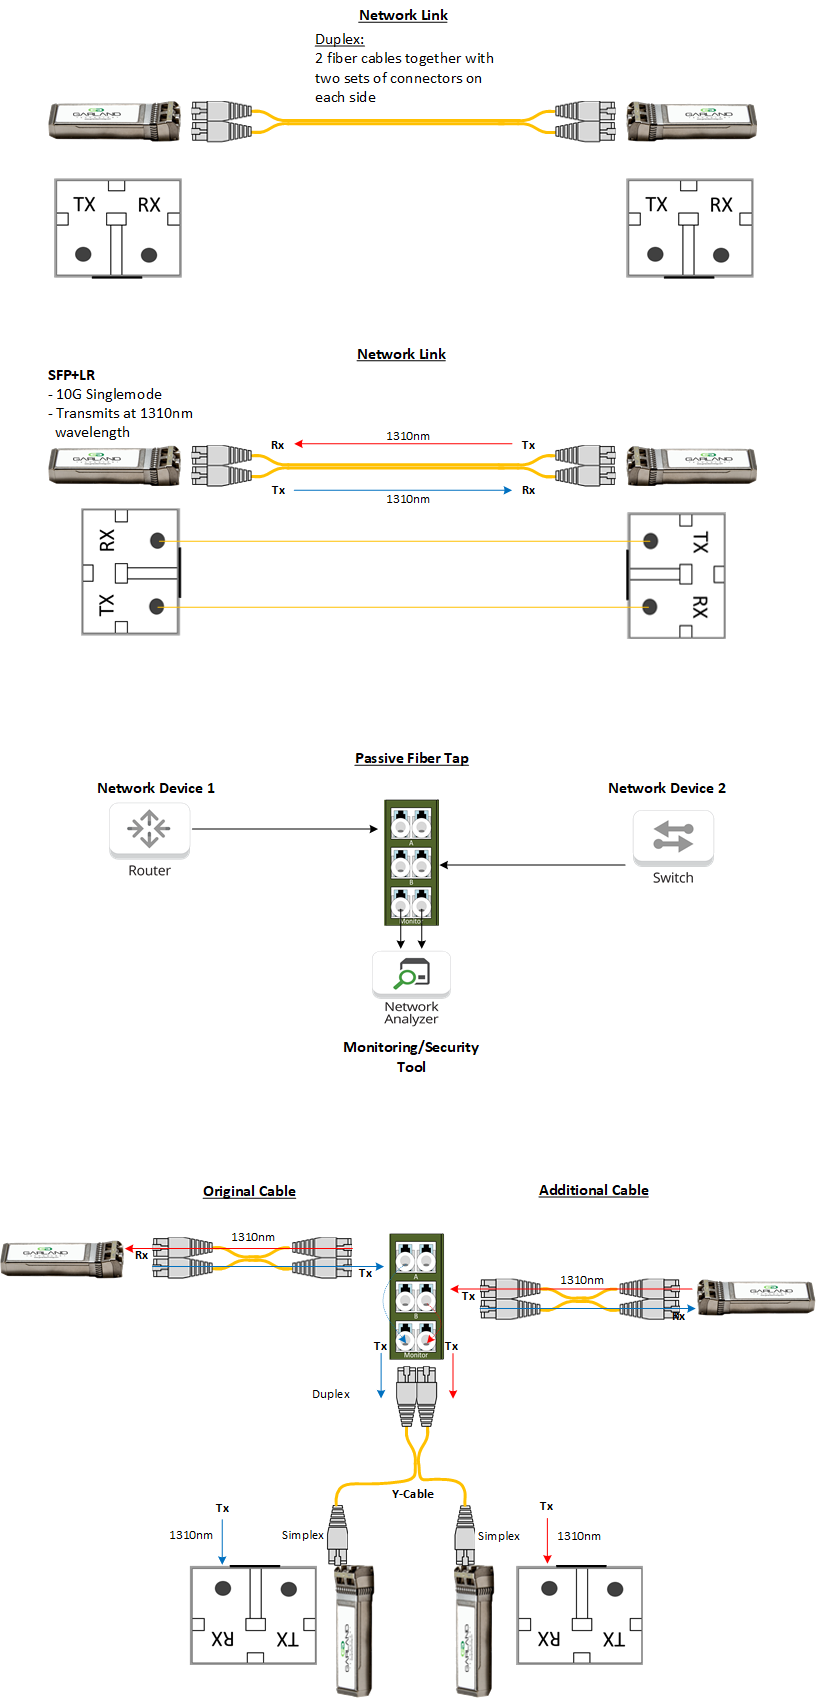 Fiber Info Diagrams - Duplex.png